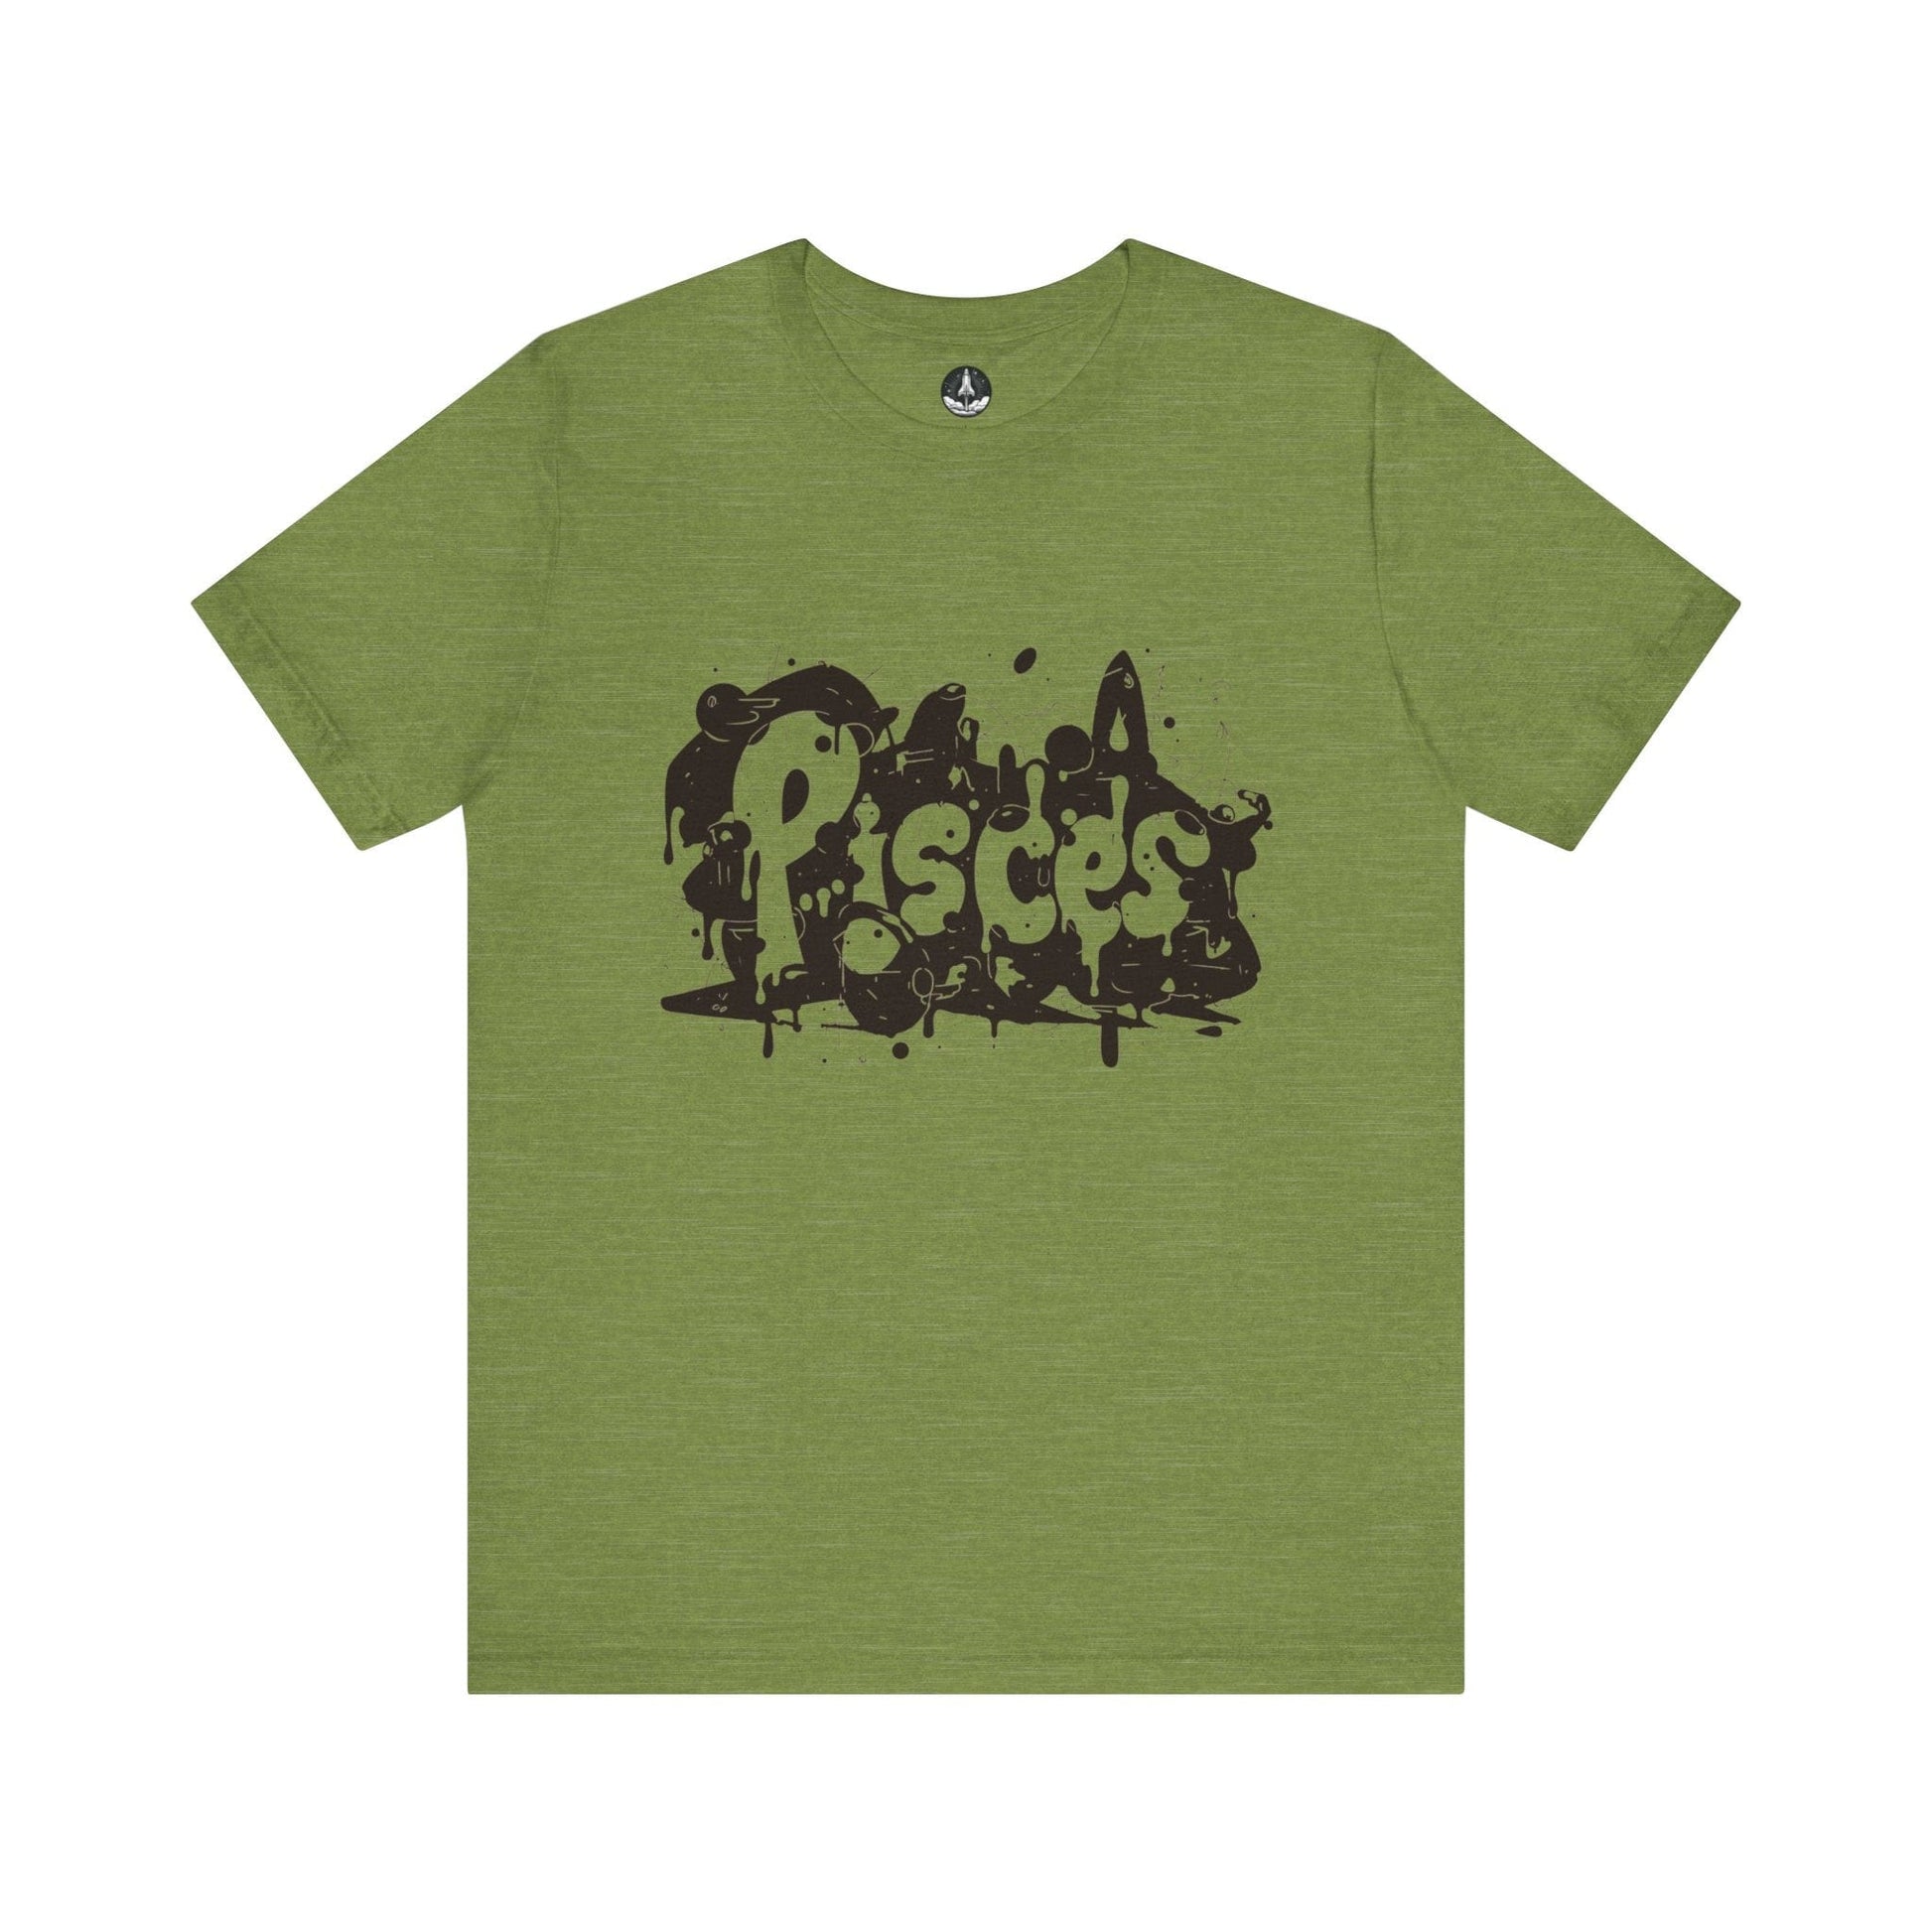 T-Shirt Heather Green / S Piscean Inkflow TShirt: Depth of Imagination